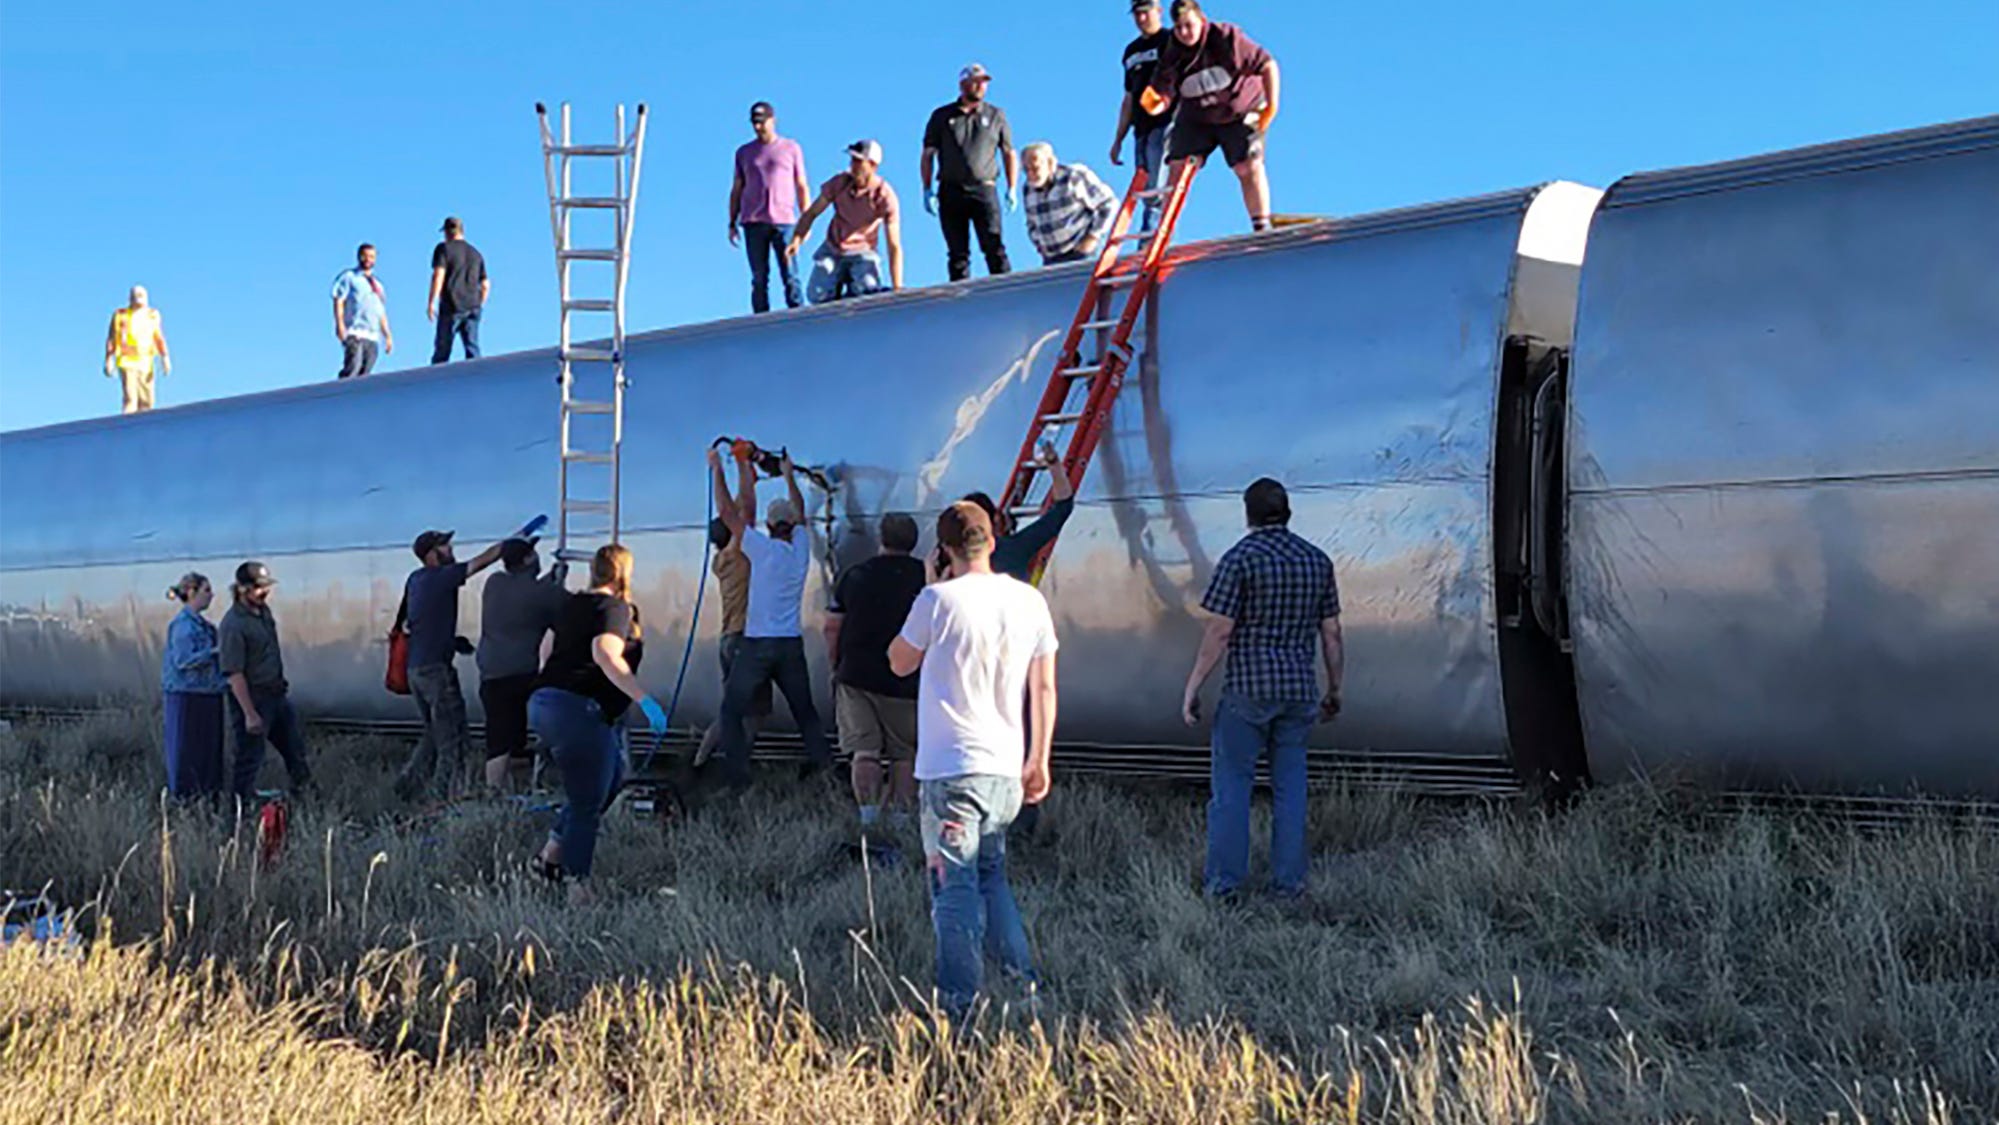 3 Dead As Amtrak Train Derails In Montana